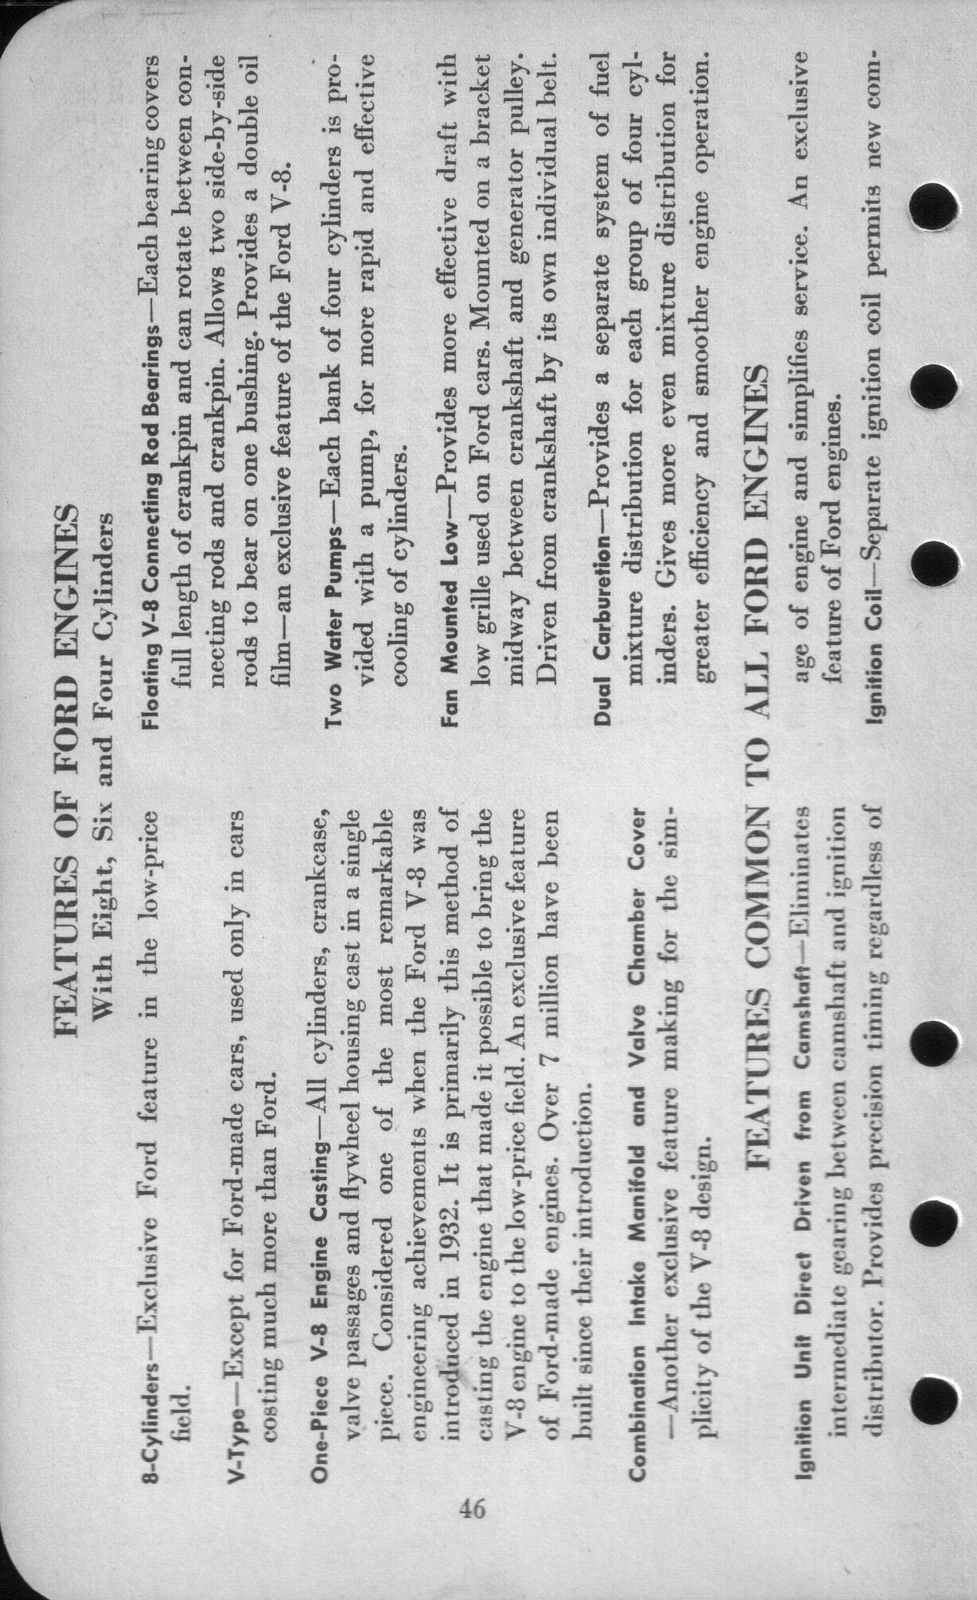 n_1942 Ford Salesmans Reference Manual-046.jpg